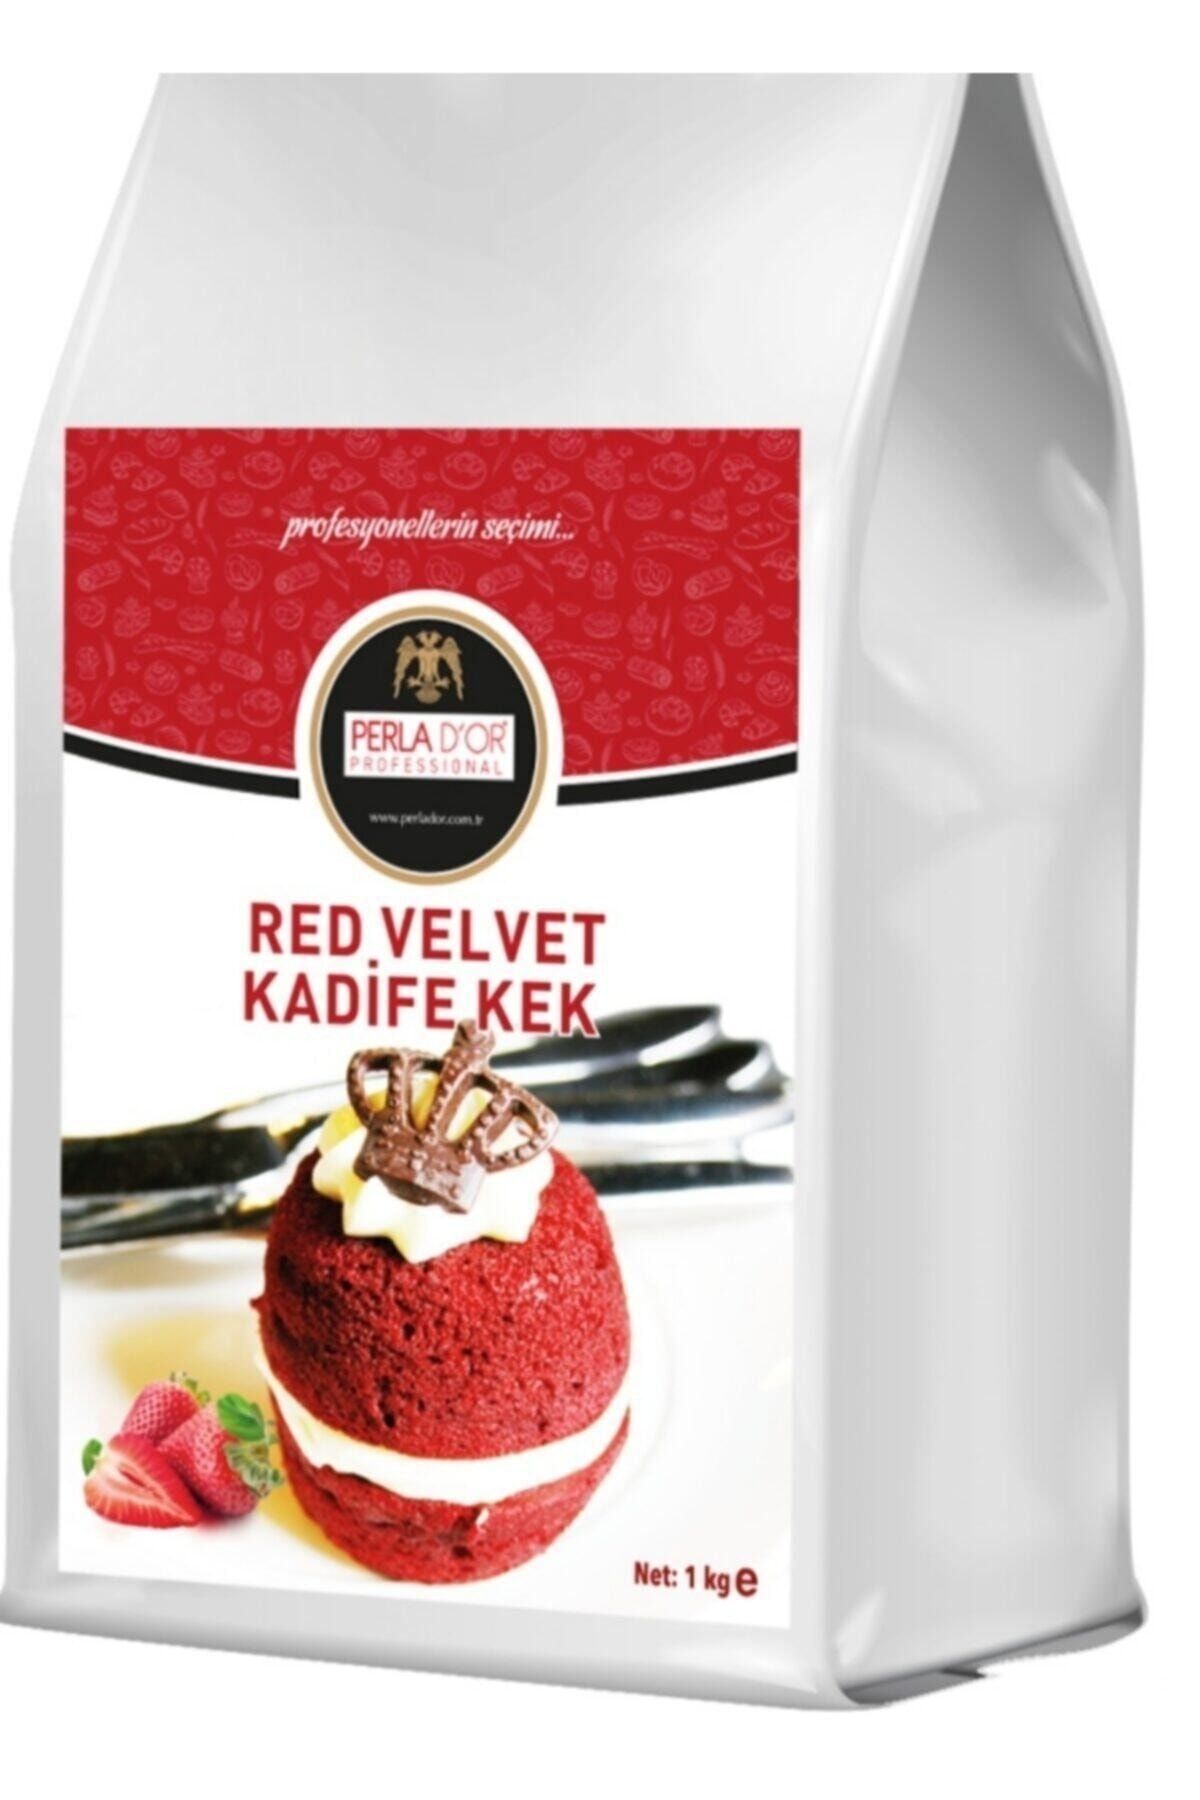 PERLADOR D'or Red Velvet Kadife Kek Fiyatı, Yorumları - Trendyol